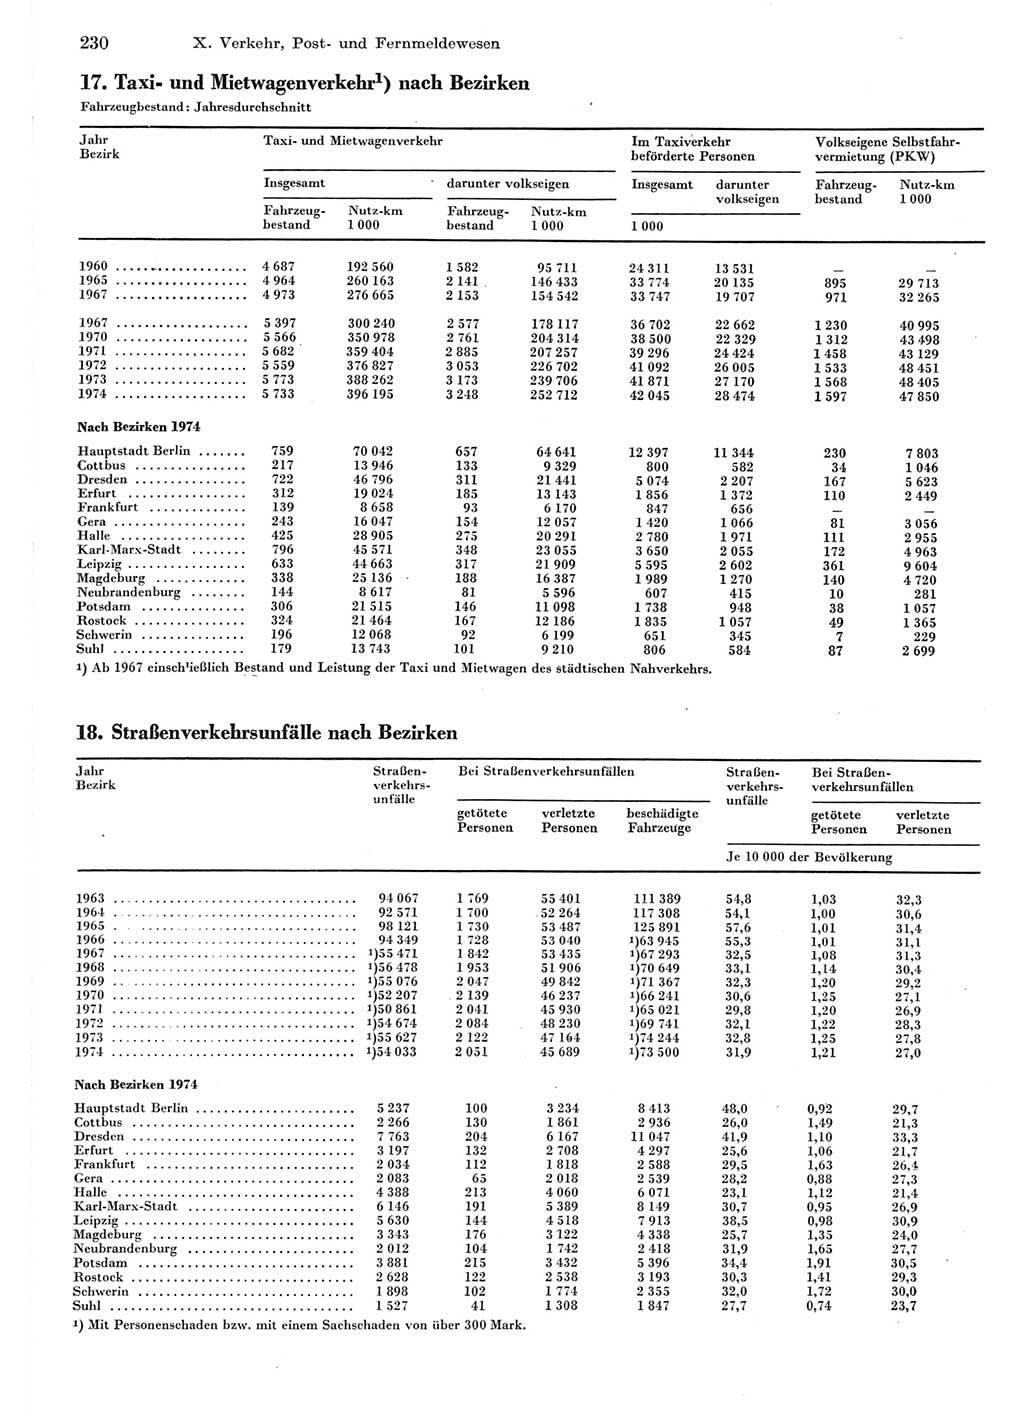 Statistisches Jahrbuch der Deutschen Demokratischen Republik (DDR) 1975, Seite 230 (Stat. Jb. DDR 1975, S. 230)